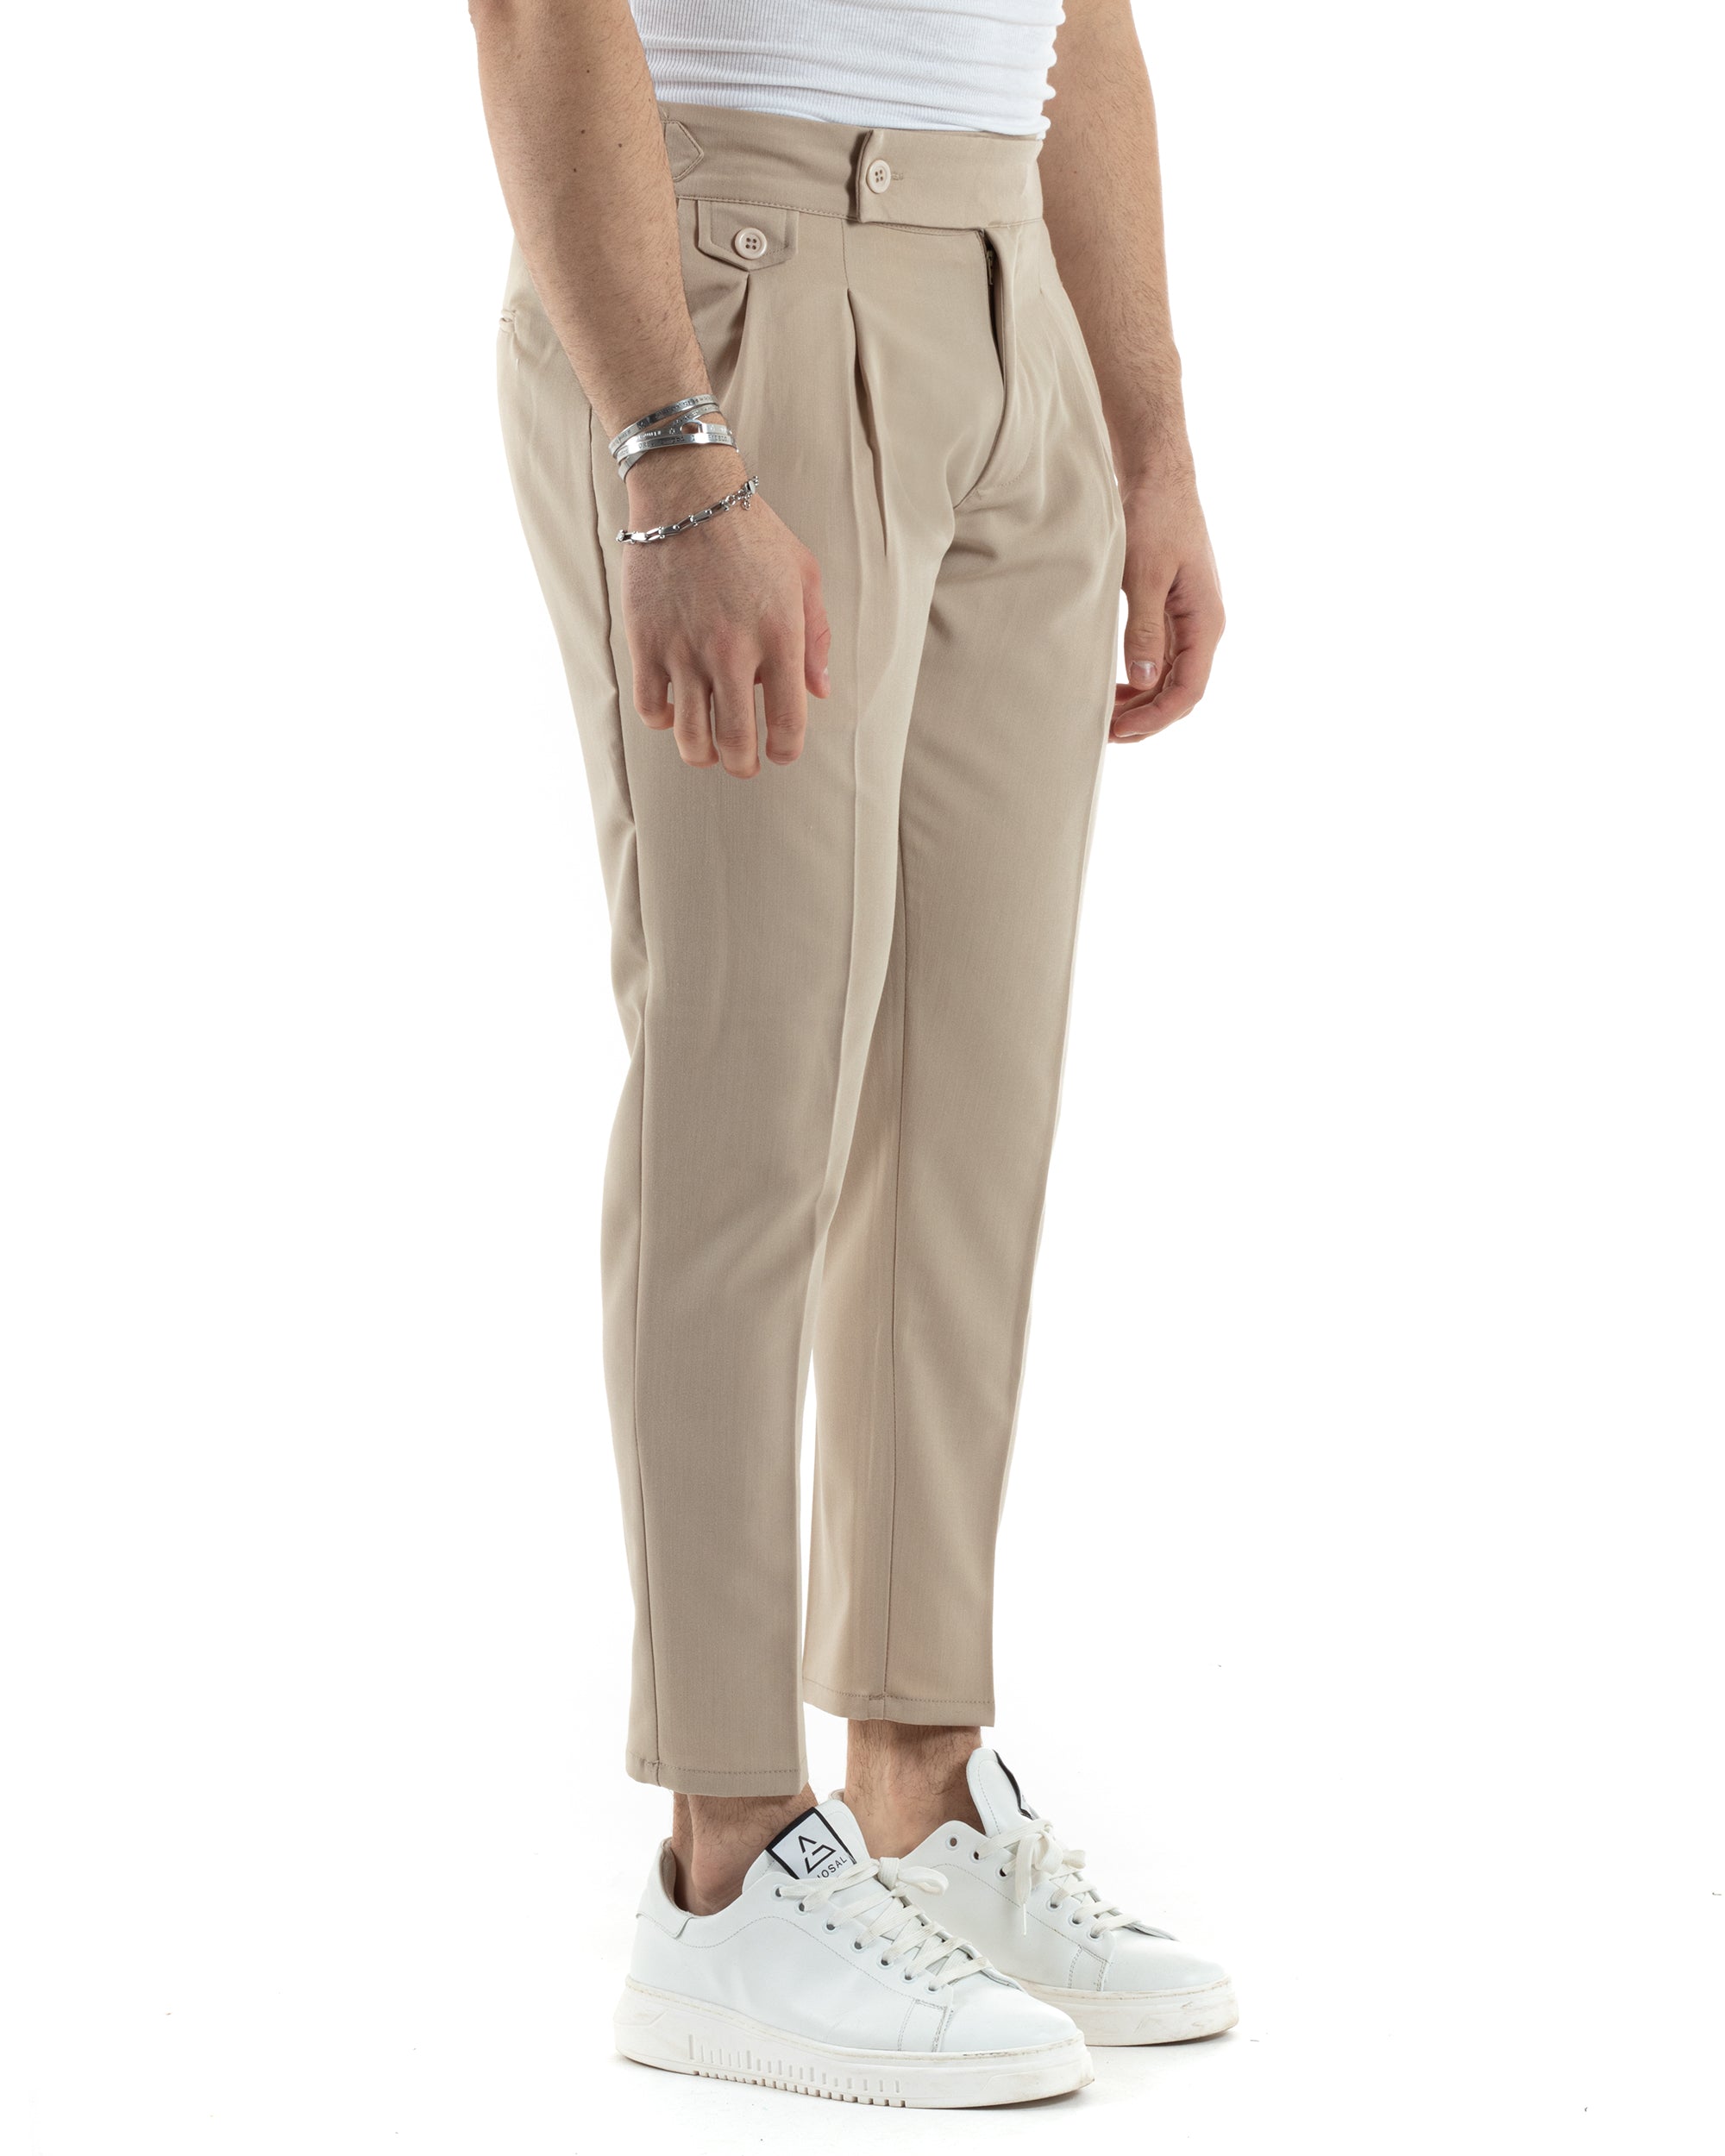 Pantaloni Uomo Tasca America Vita Alta Classico Pinces Abbottonatura Allungata Fibbia Casual Beige GIOSAL-P6041A